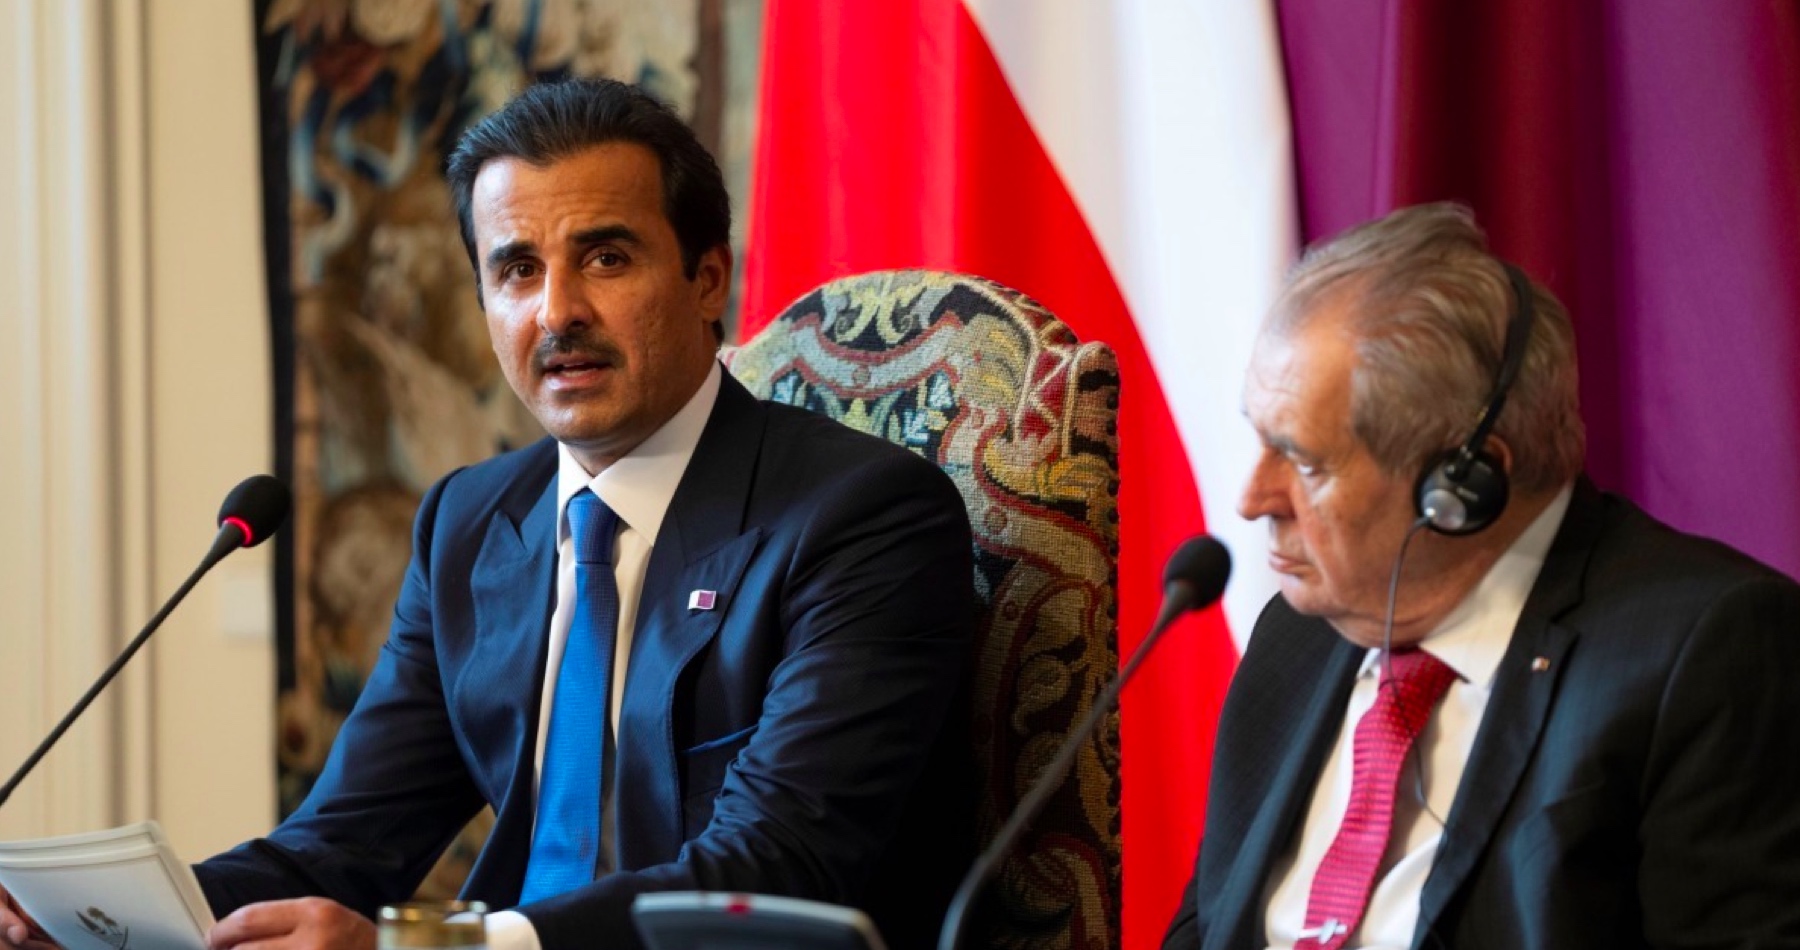 Katarský emír odletěl z Prahy, Brusel si nepřál jeho účast na neformálním summitu